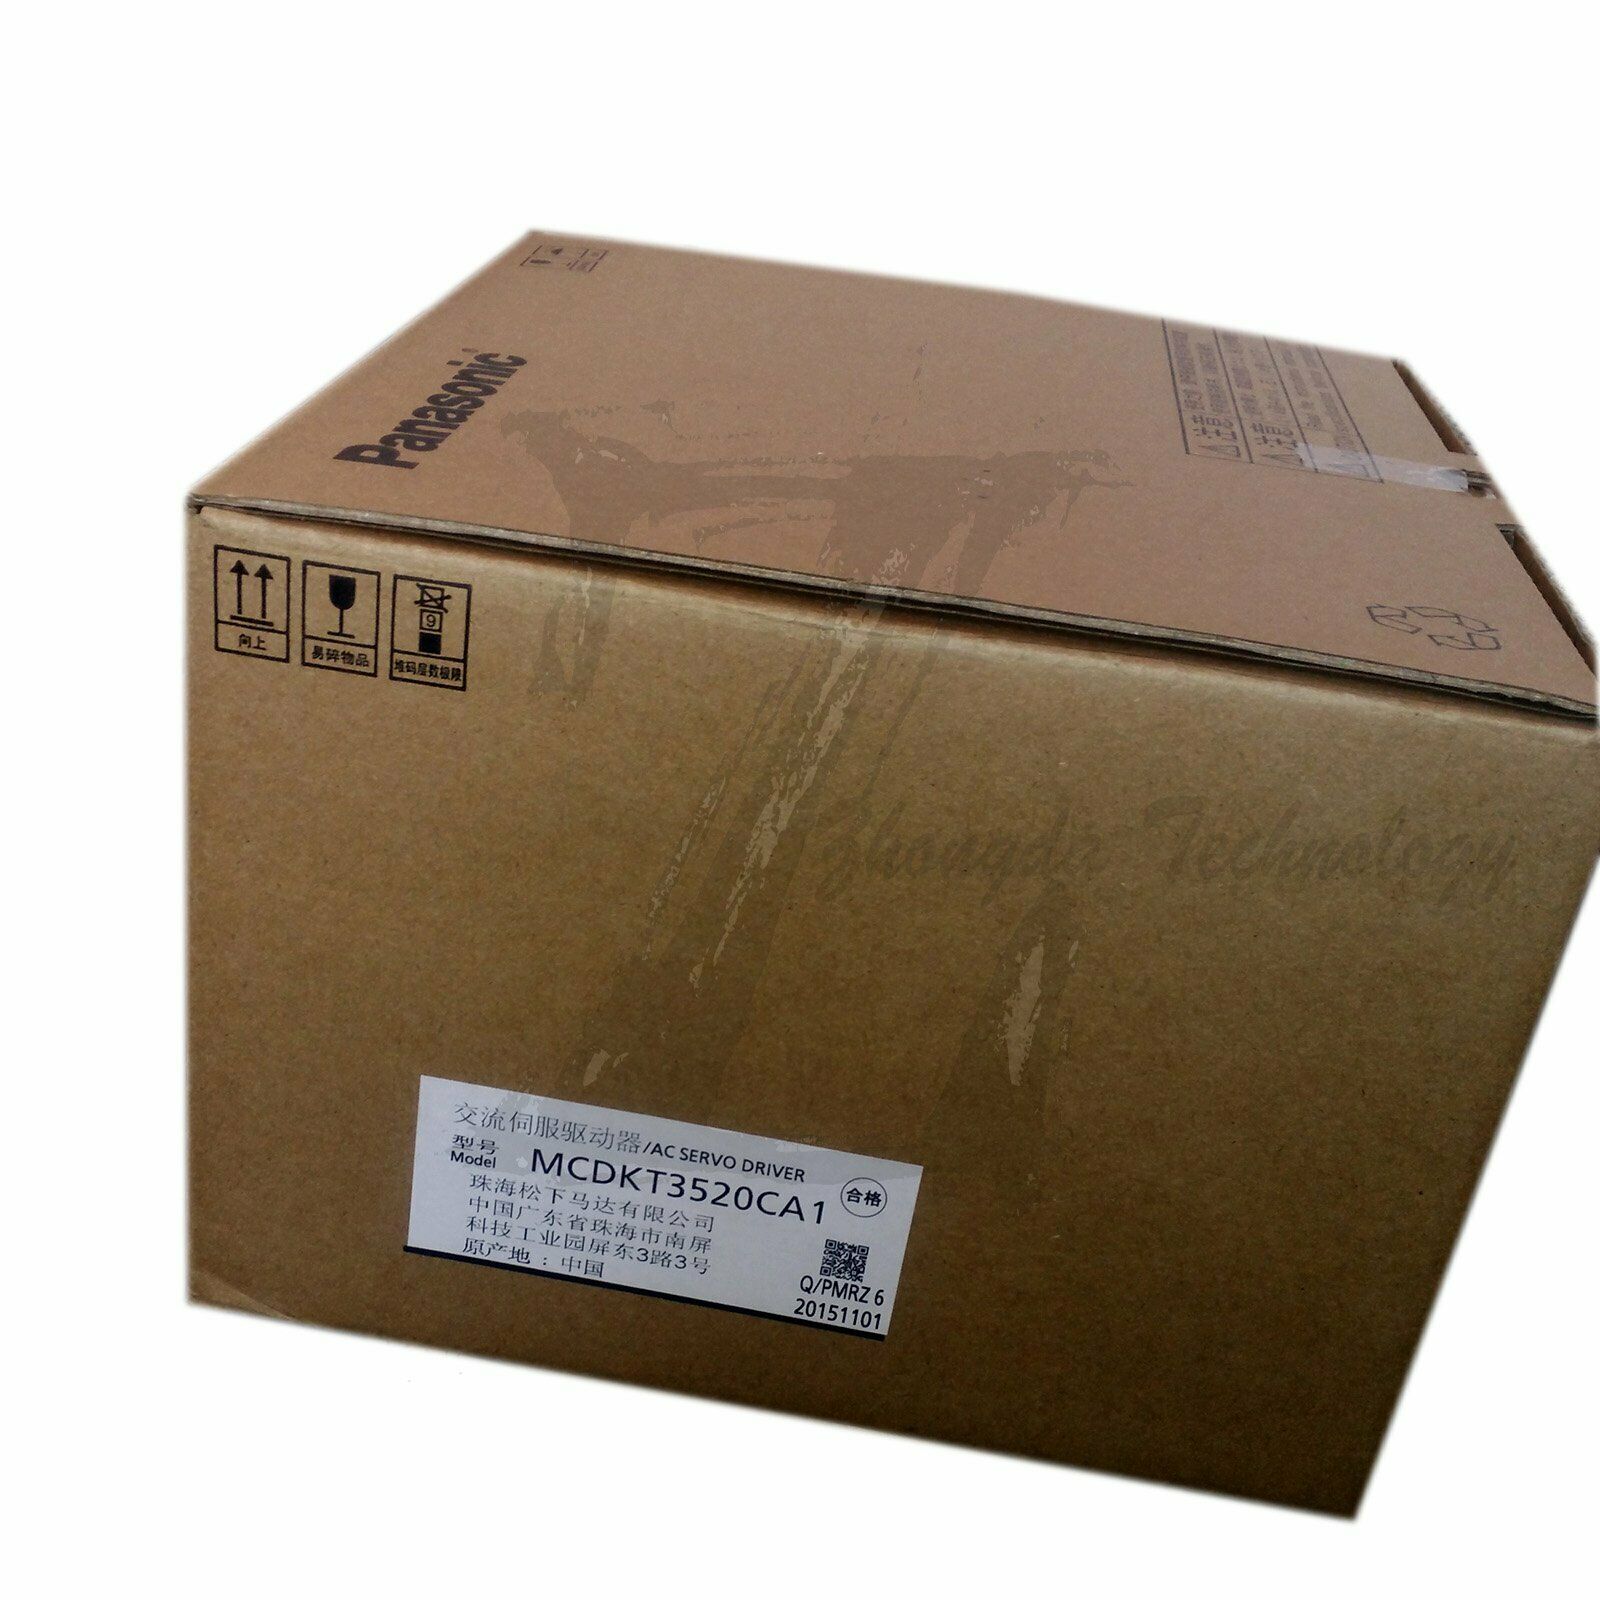 New In Box 1PC Panasonic 750w MCDKT3520CA1 servo Drive